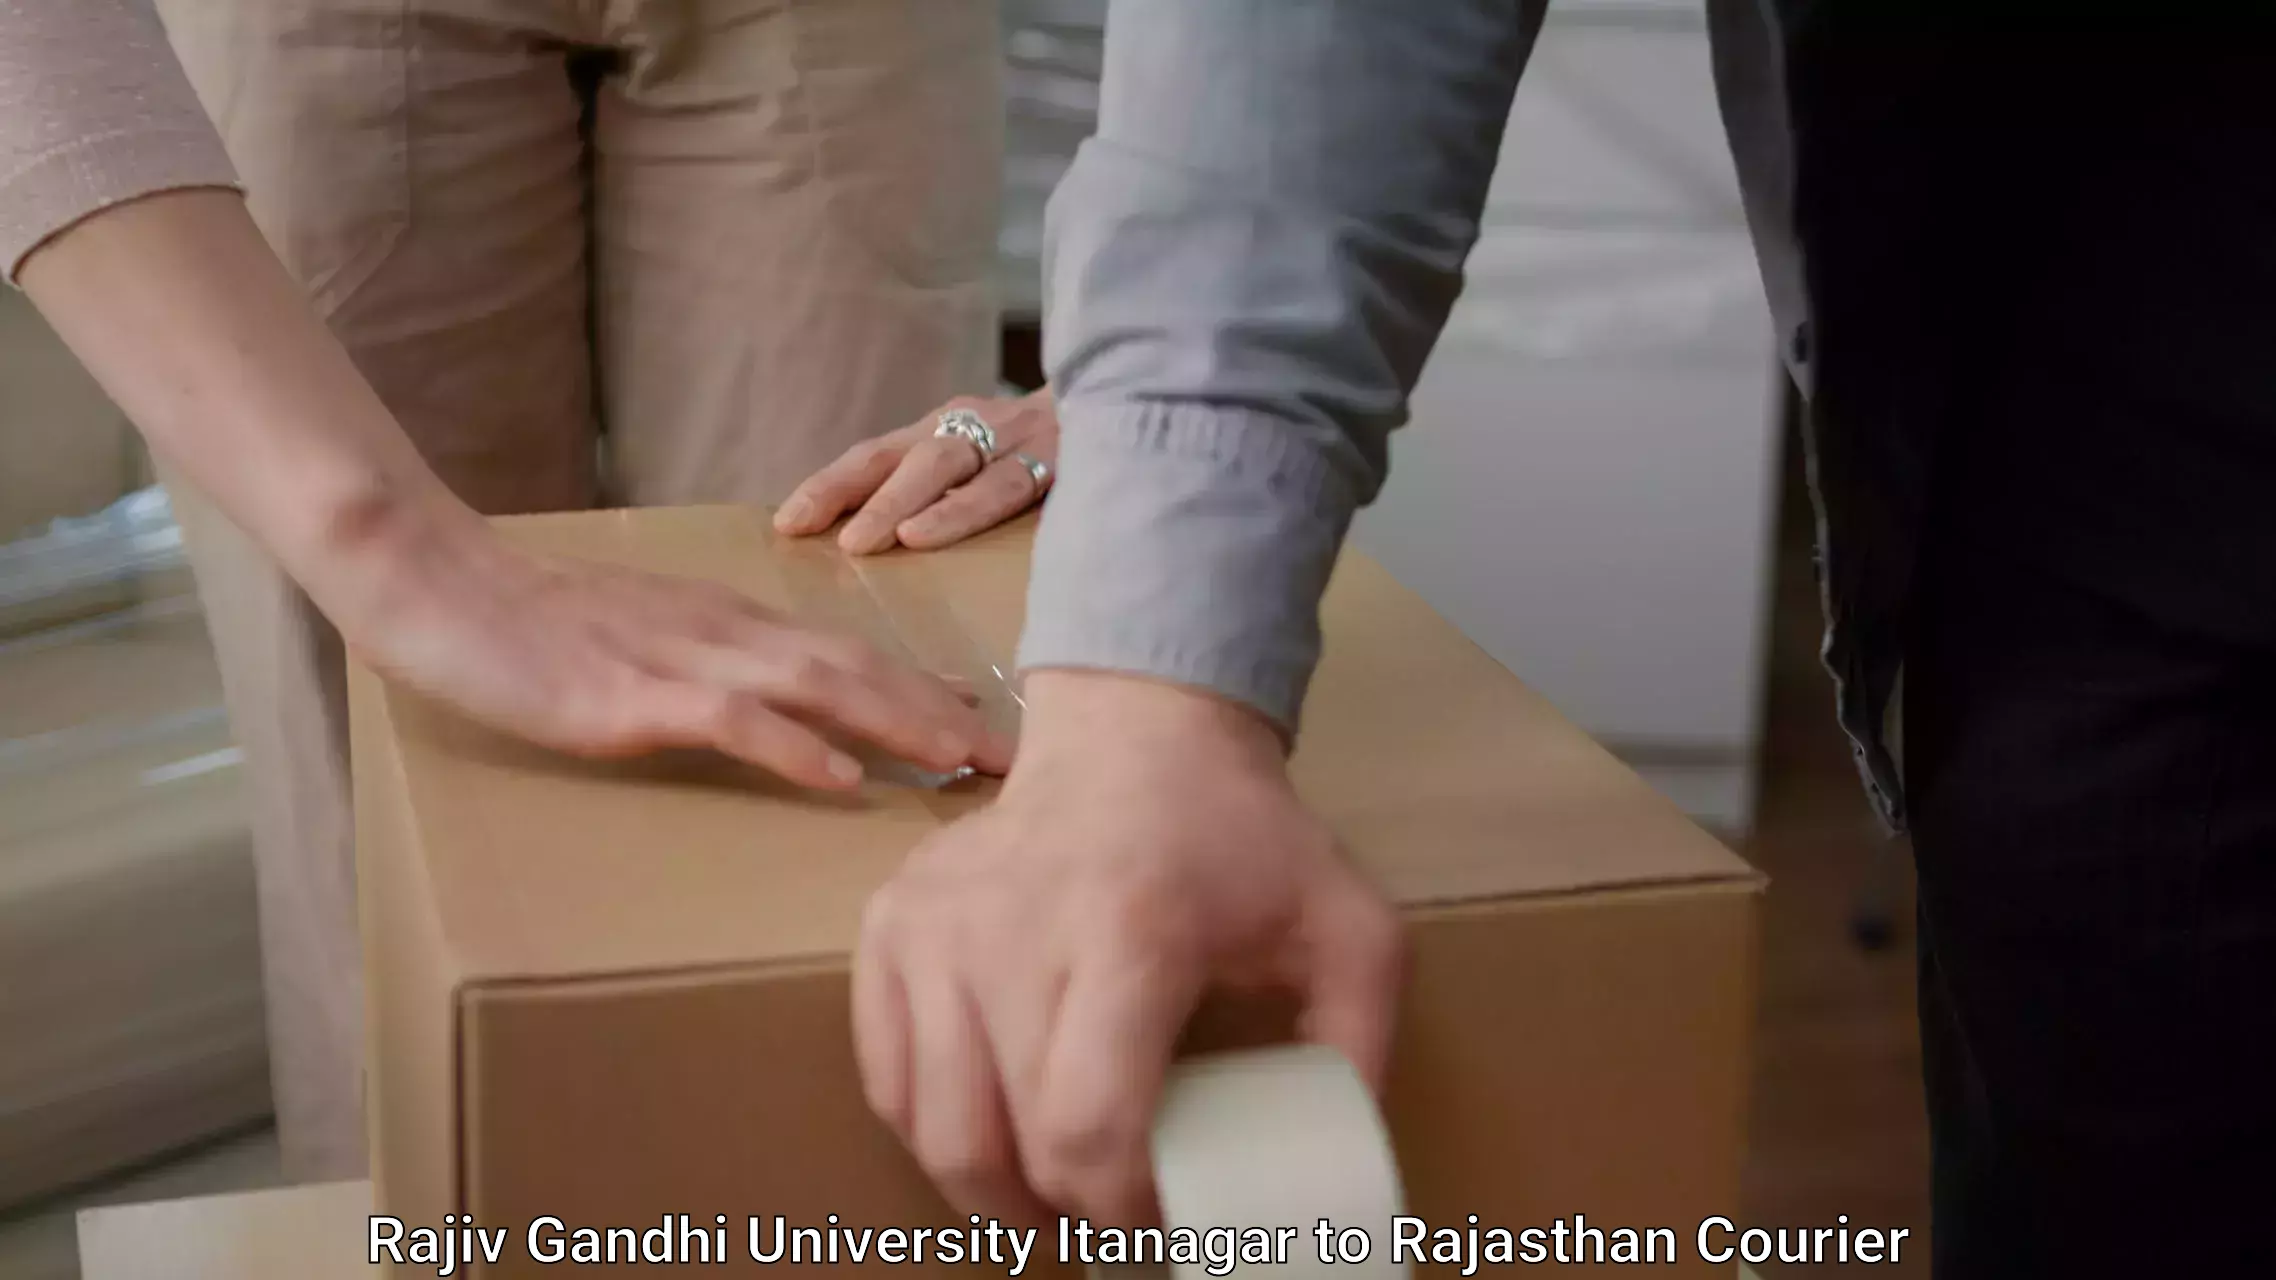 Furniture shipping services in Rajiv Gandhi University Itanagar to Danta Ramgarh